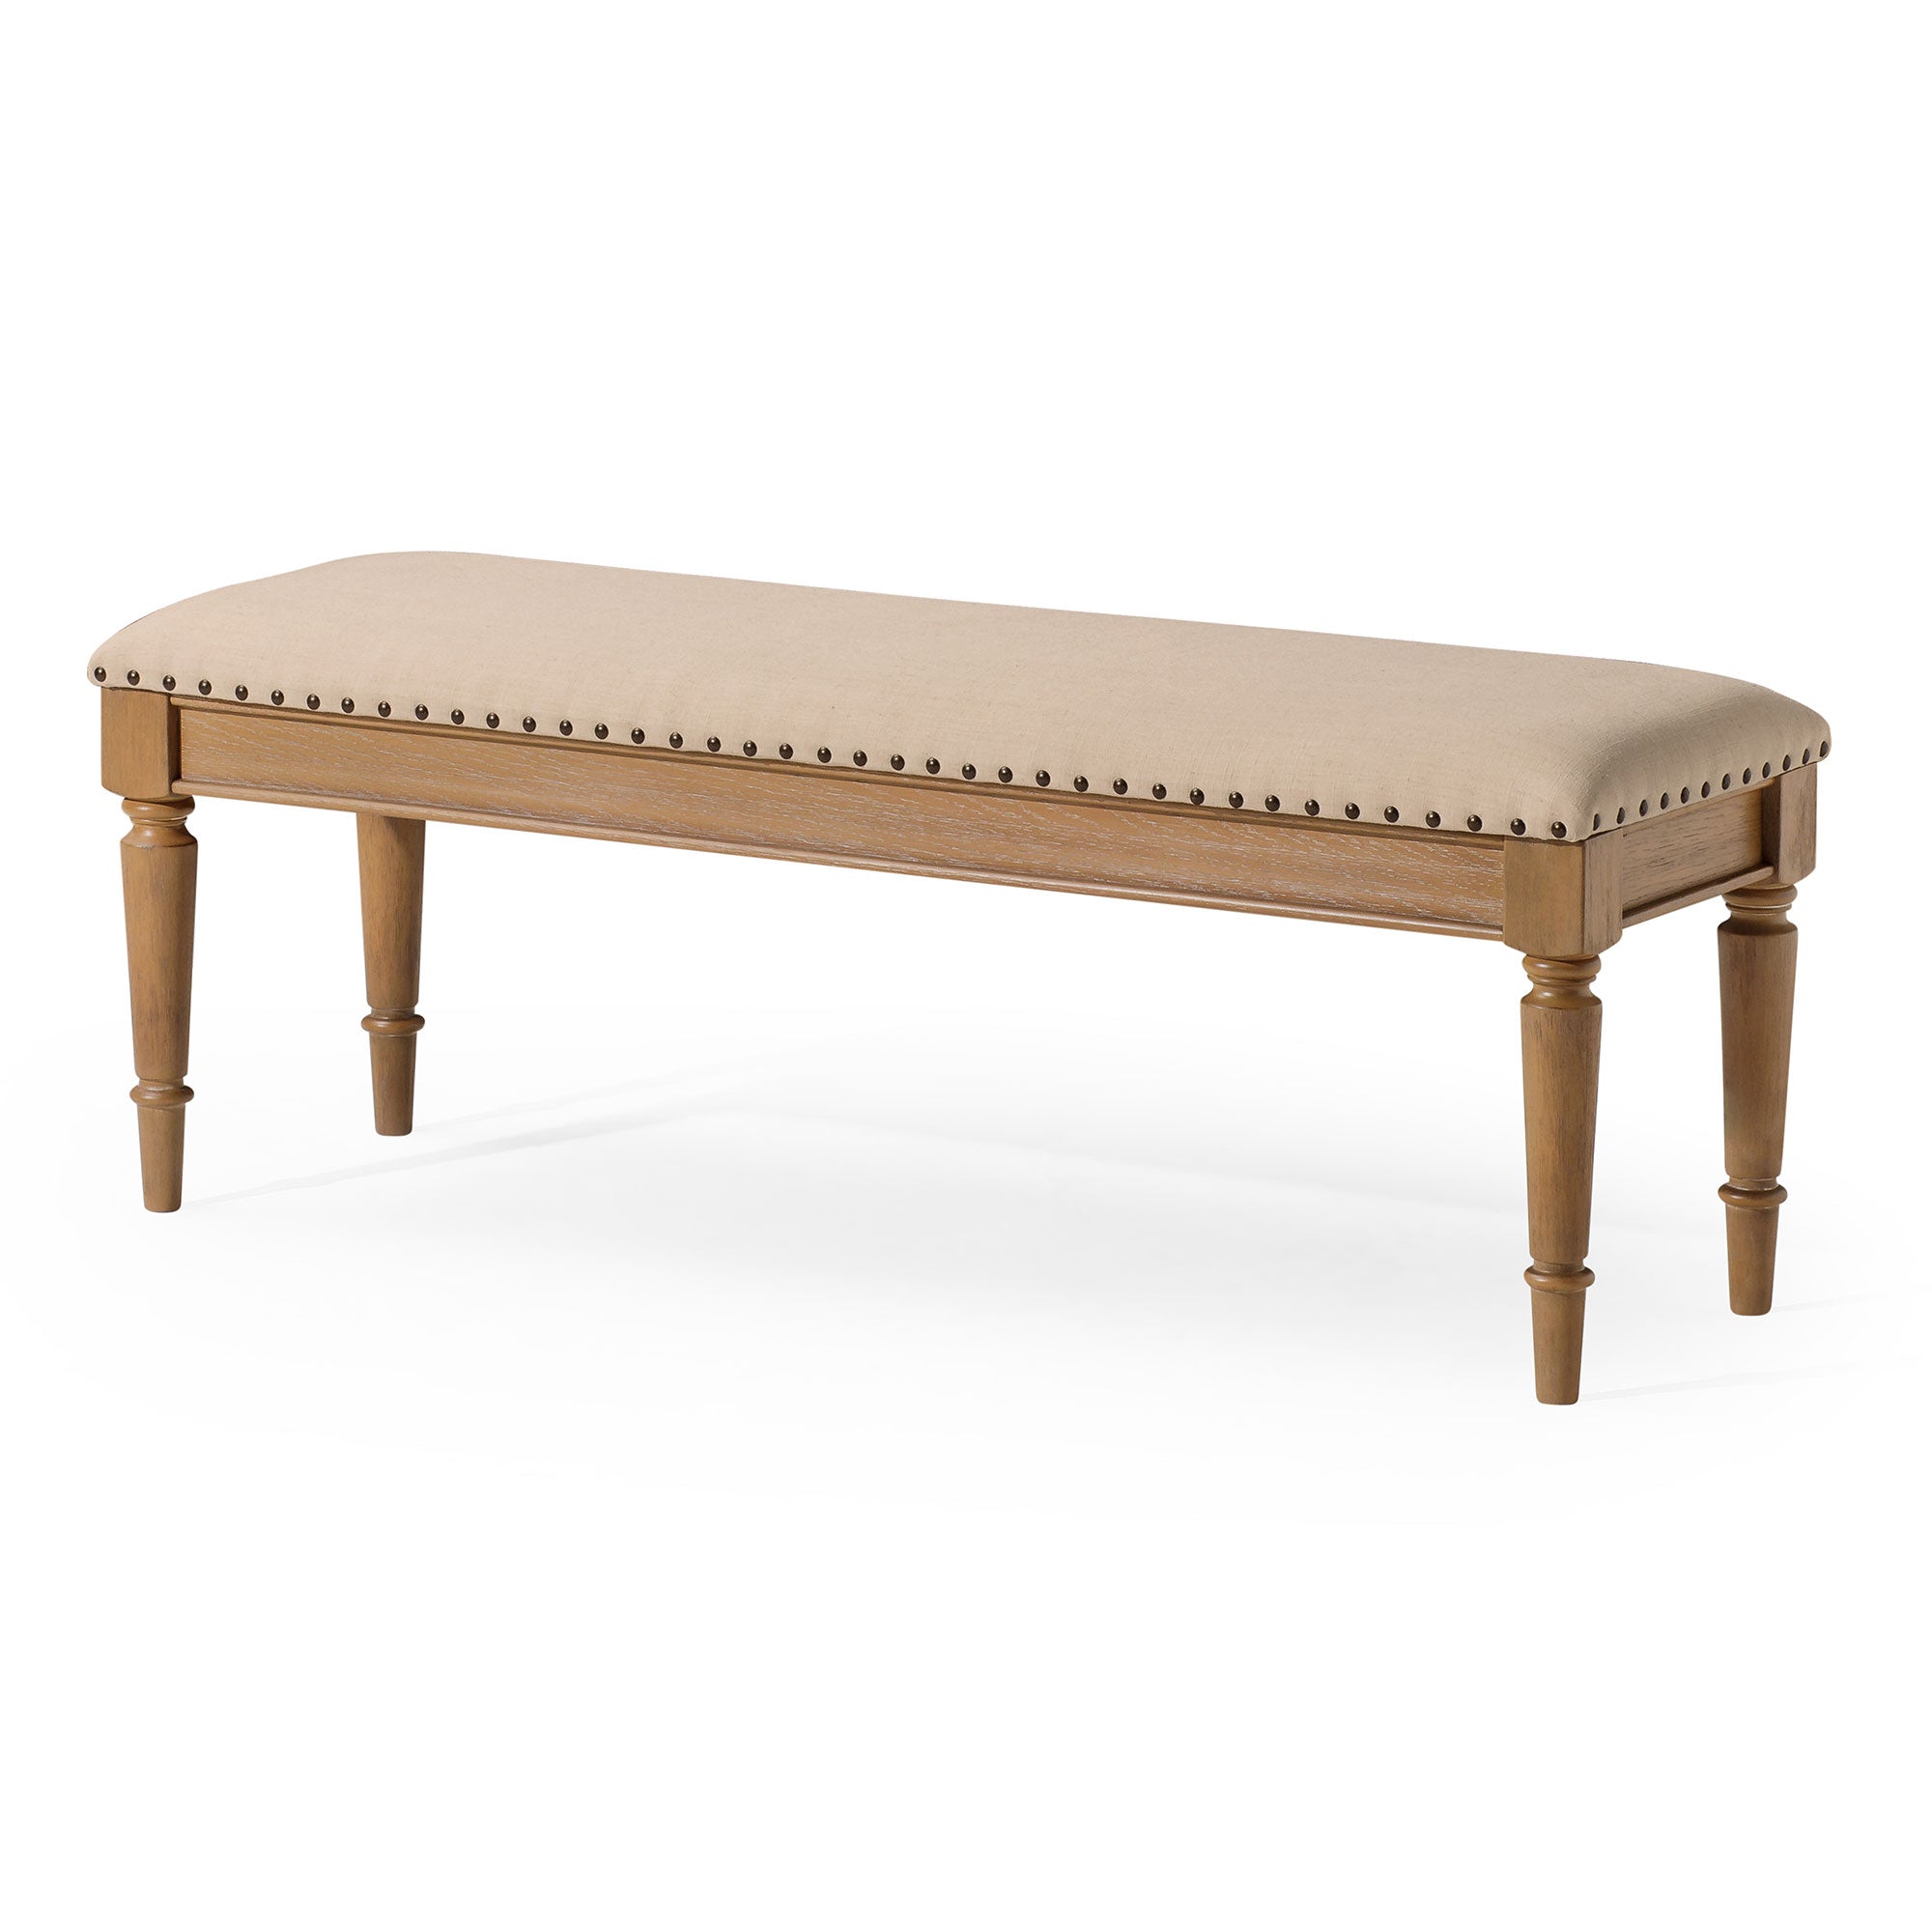 Elizabeth Traditional Upholstered Wood Bench, Antiqued Natural Finish